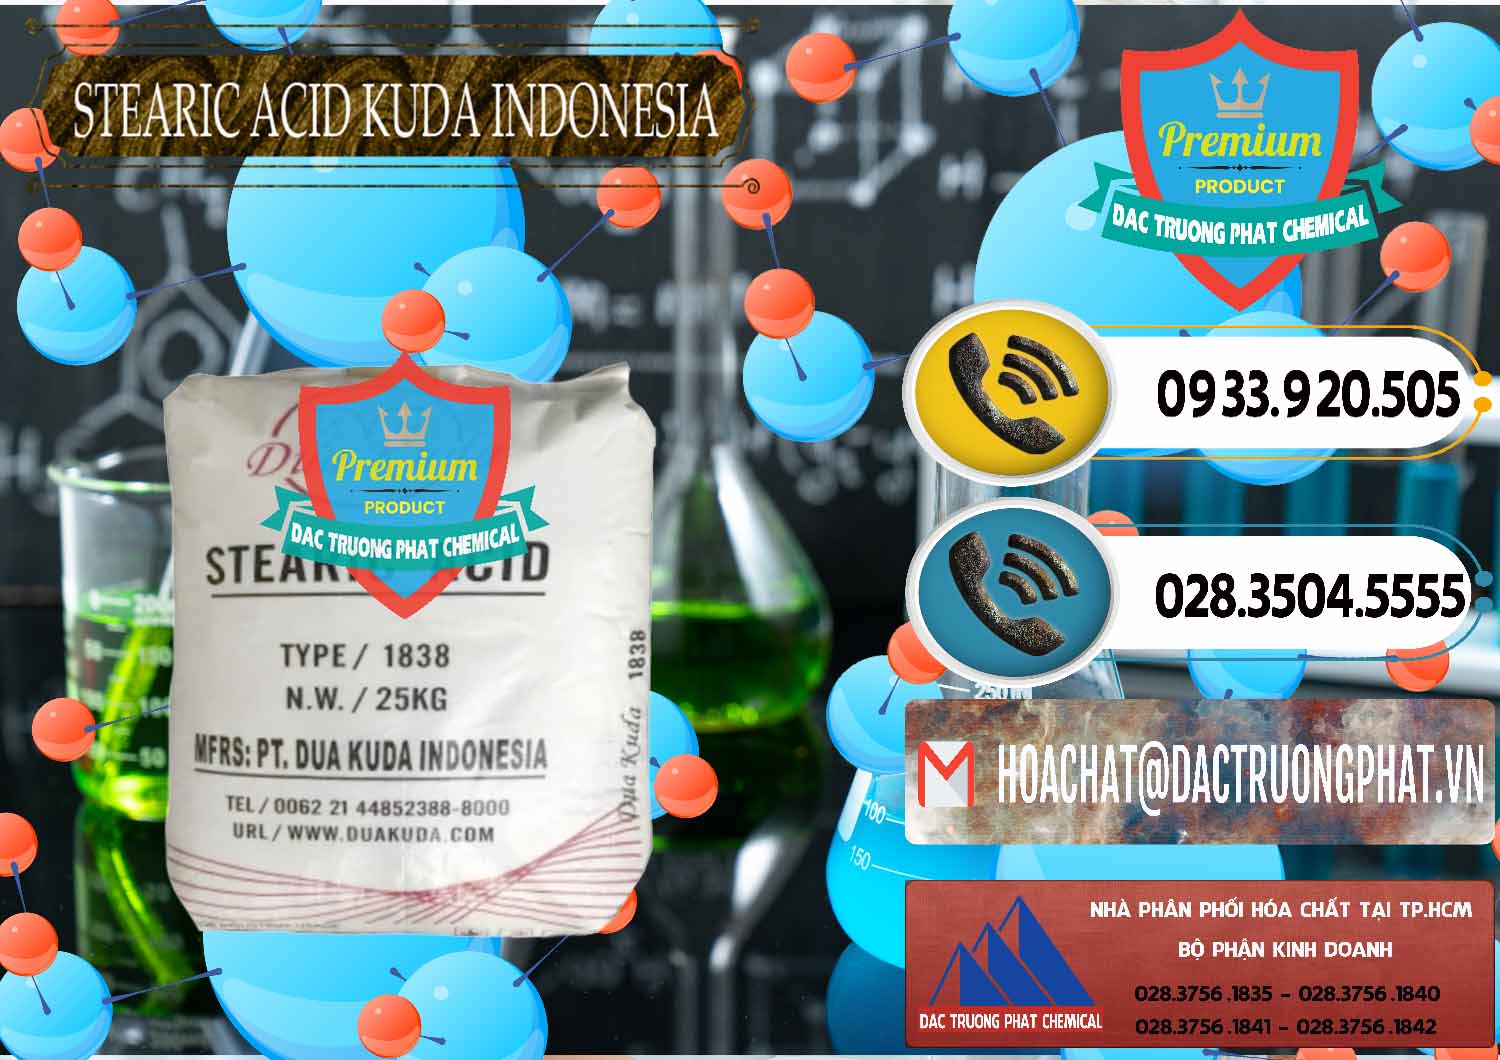 Đơn vị chuyên nhập khẩu và bán Axit Stearic - Stearic Acid Dua Kuda Indonesia - 0388 - Đơn vị chuyên nhập khẩu _ phân phối hóa chất tại TP.HCM - hoachatdetnhuom.vn